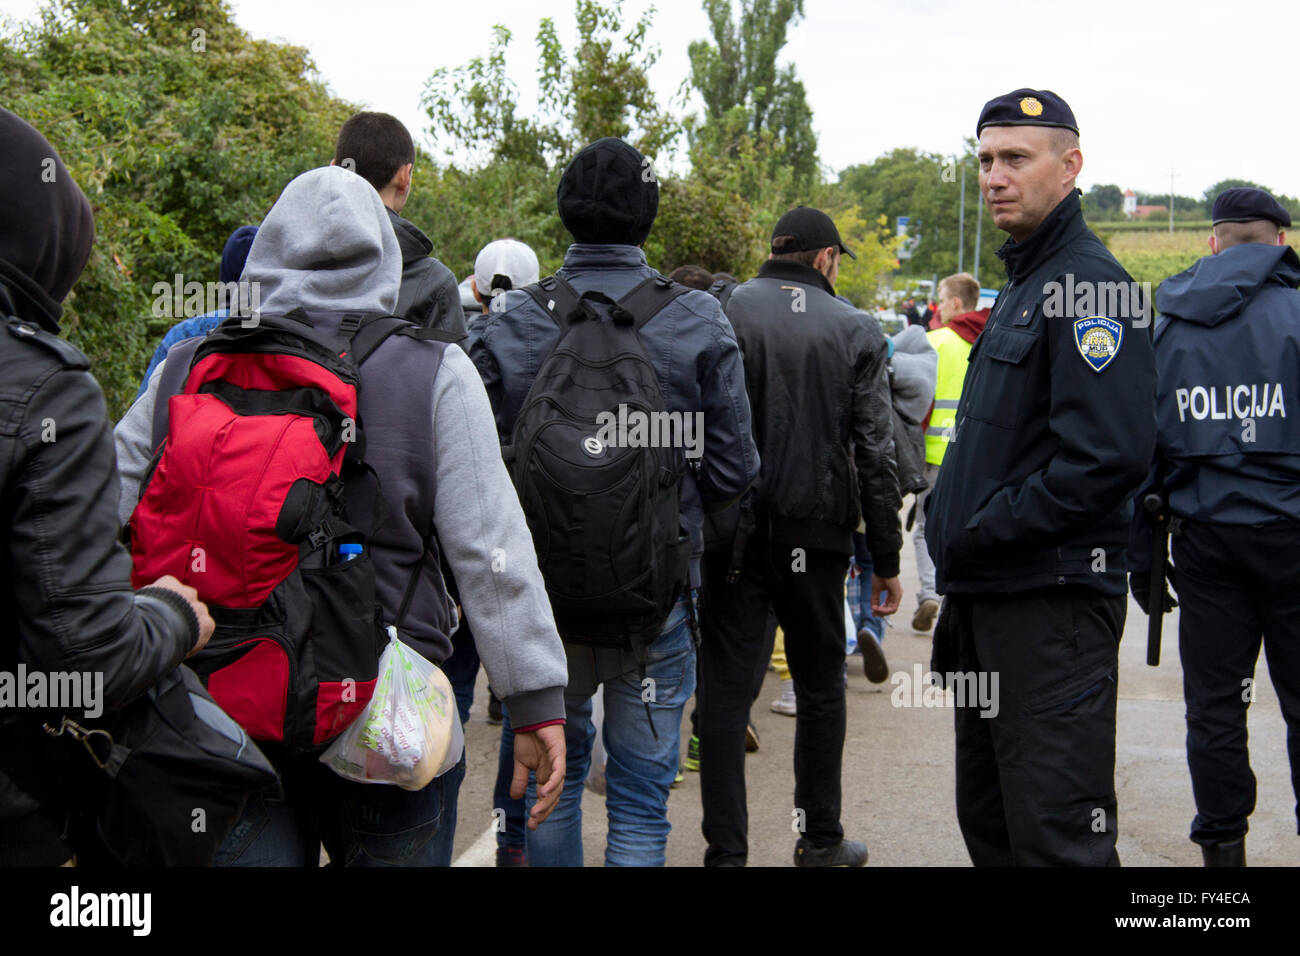 Refugiados a cruzar la frontera entre Berkasovo serbocroata (Serbia) y Bapska (Croacia) Foto de stock